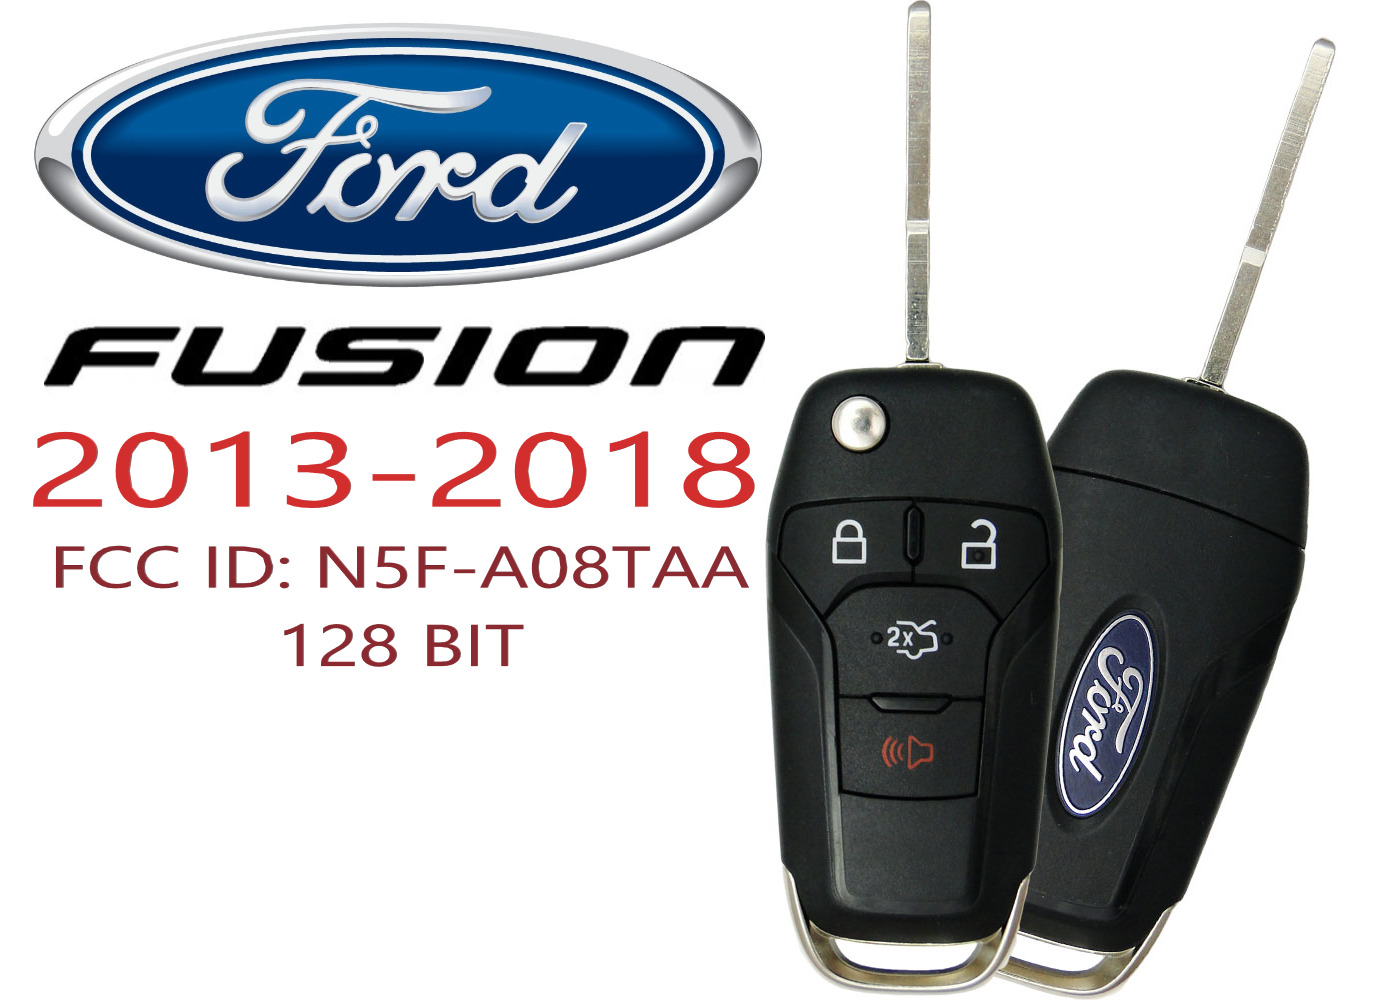 NEW Ford Fusion ​2013 - 2018 Remote Flip Key Fob FCC ID: N5F-A08TAA 128 BIT